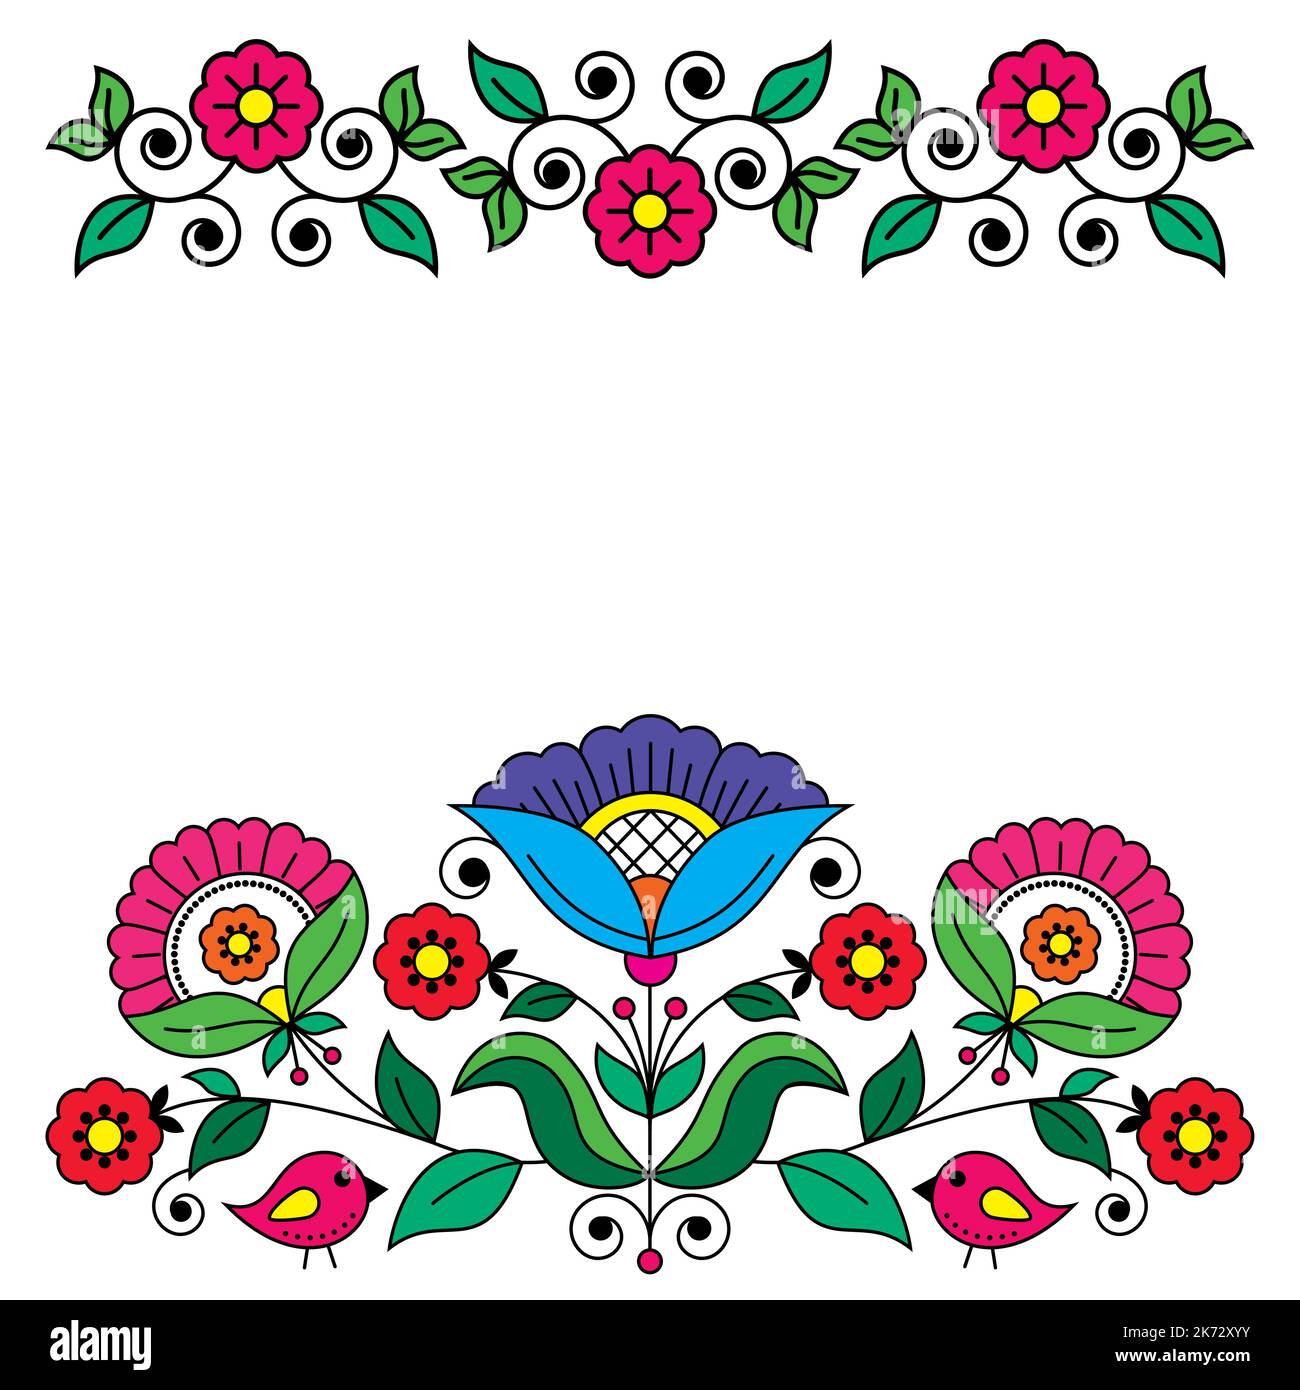 Skandinavische Retro Folk Art Vektor Grußkarte oder Hochzeit invitaion Design inspiriert von traditionellen Stickereien Muster aus Schweden, Retro-Dekoration Stock Vektor